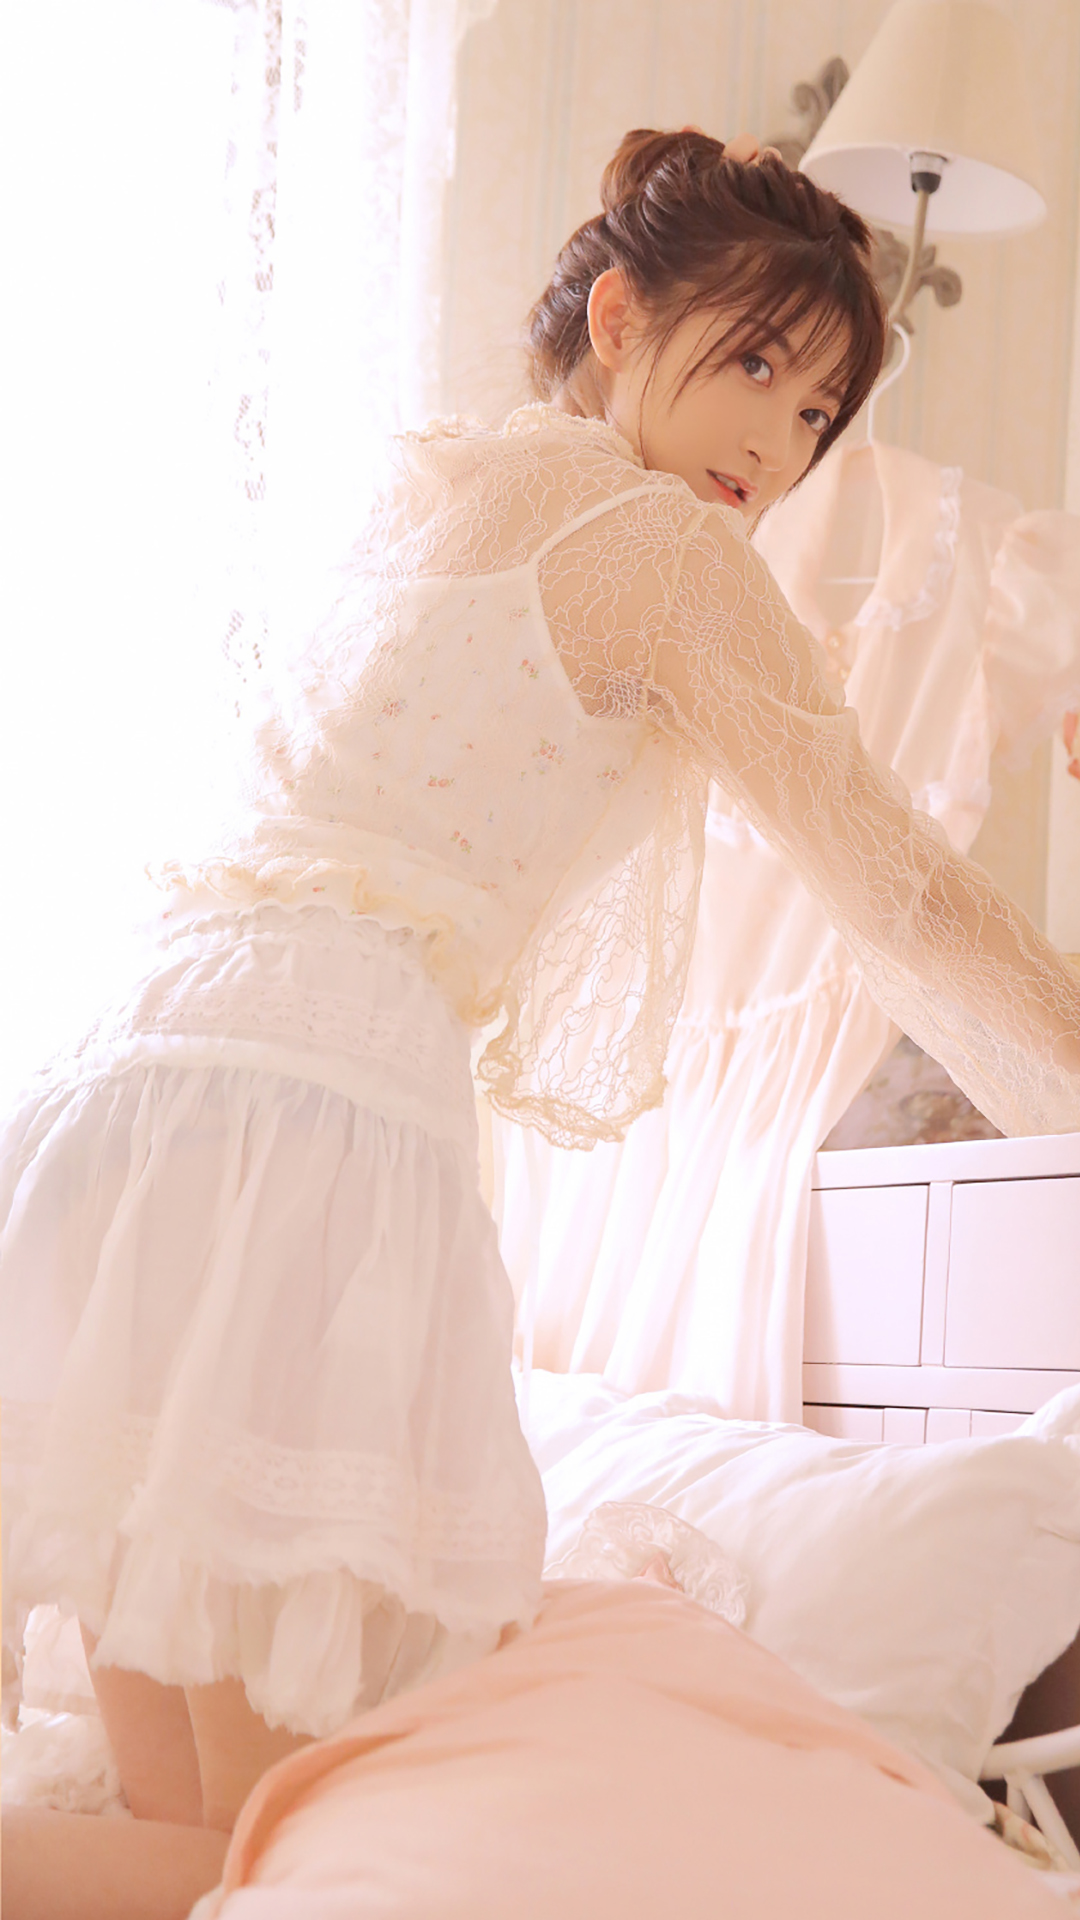 白色蕾丝纱裙丸子头清纯美女  第1张